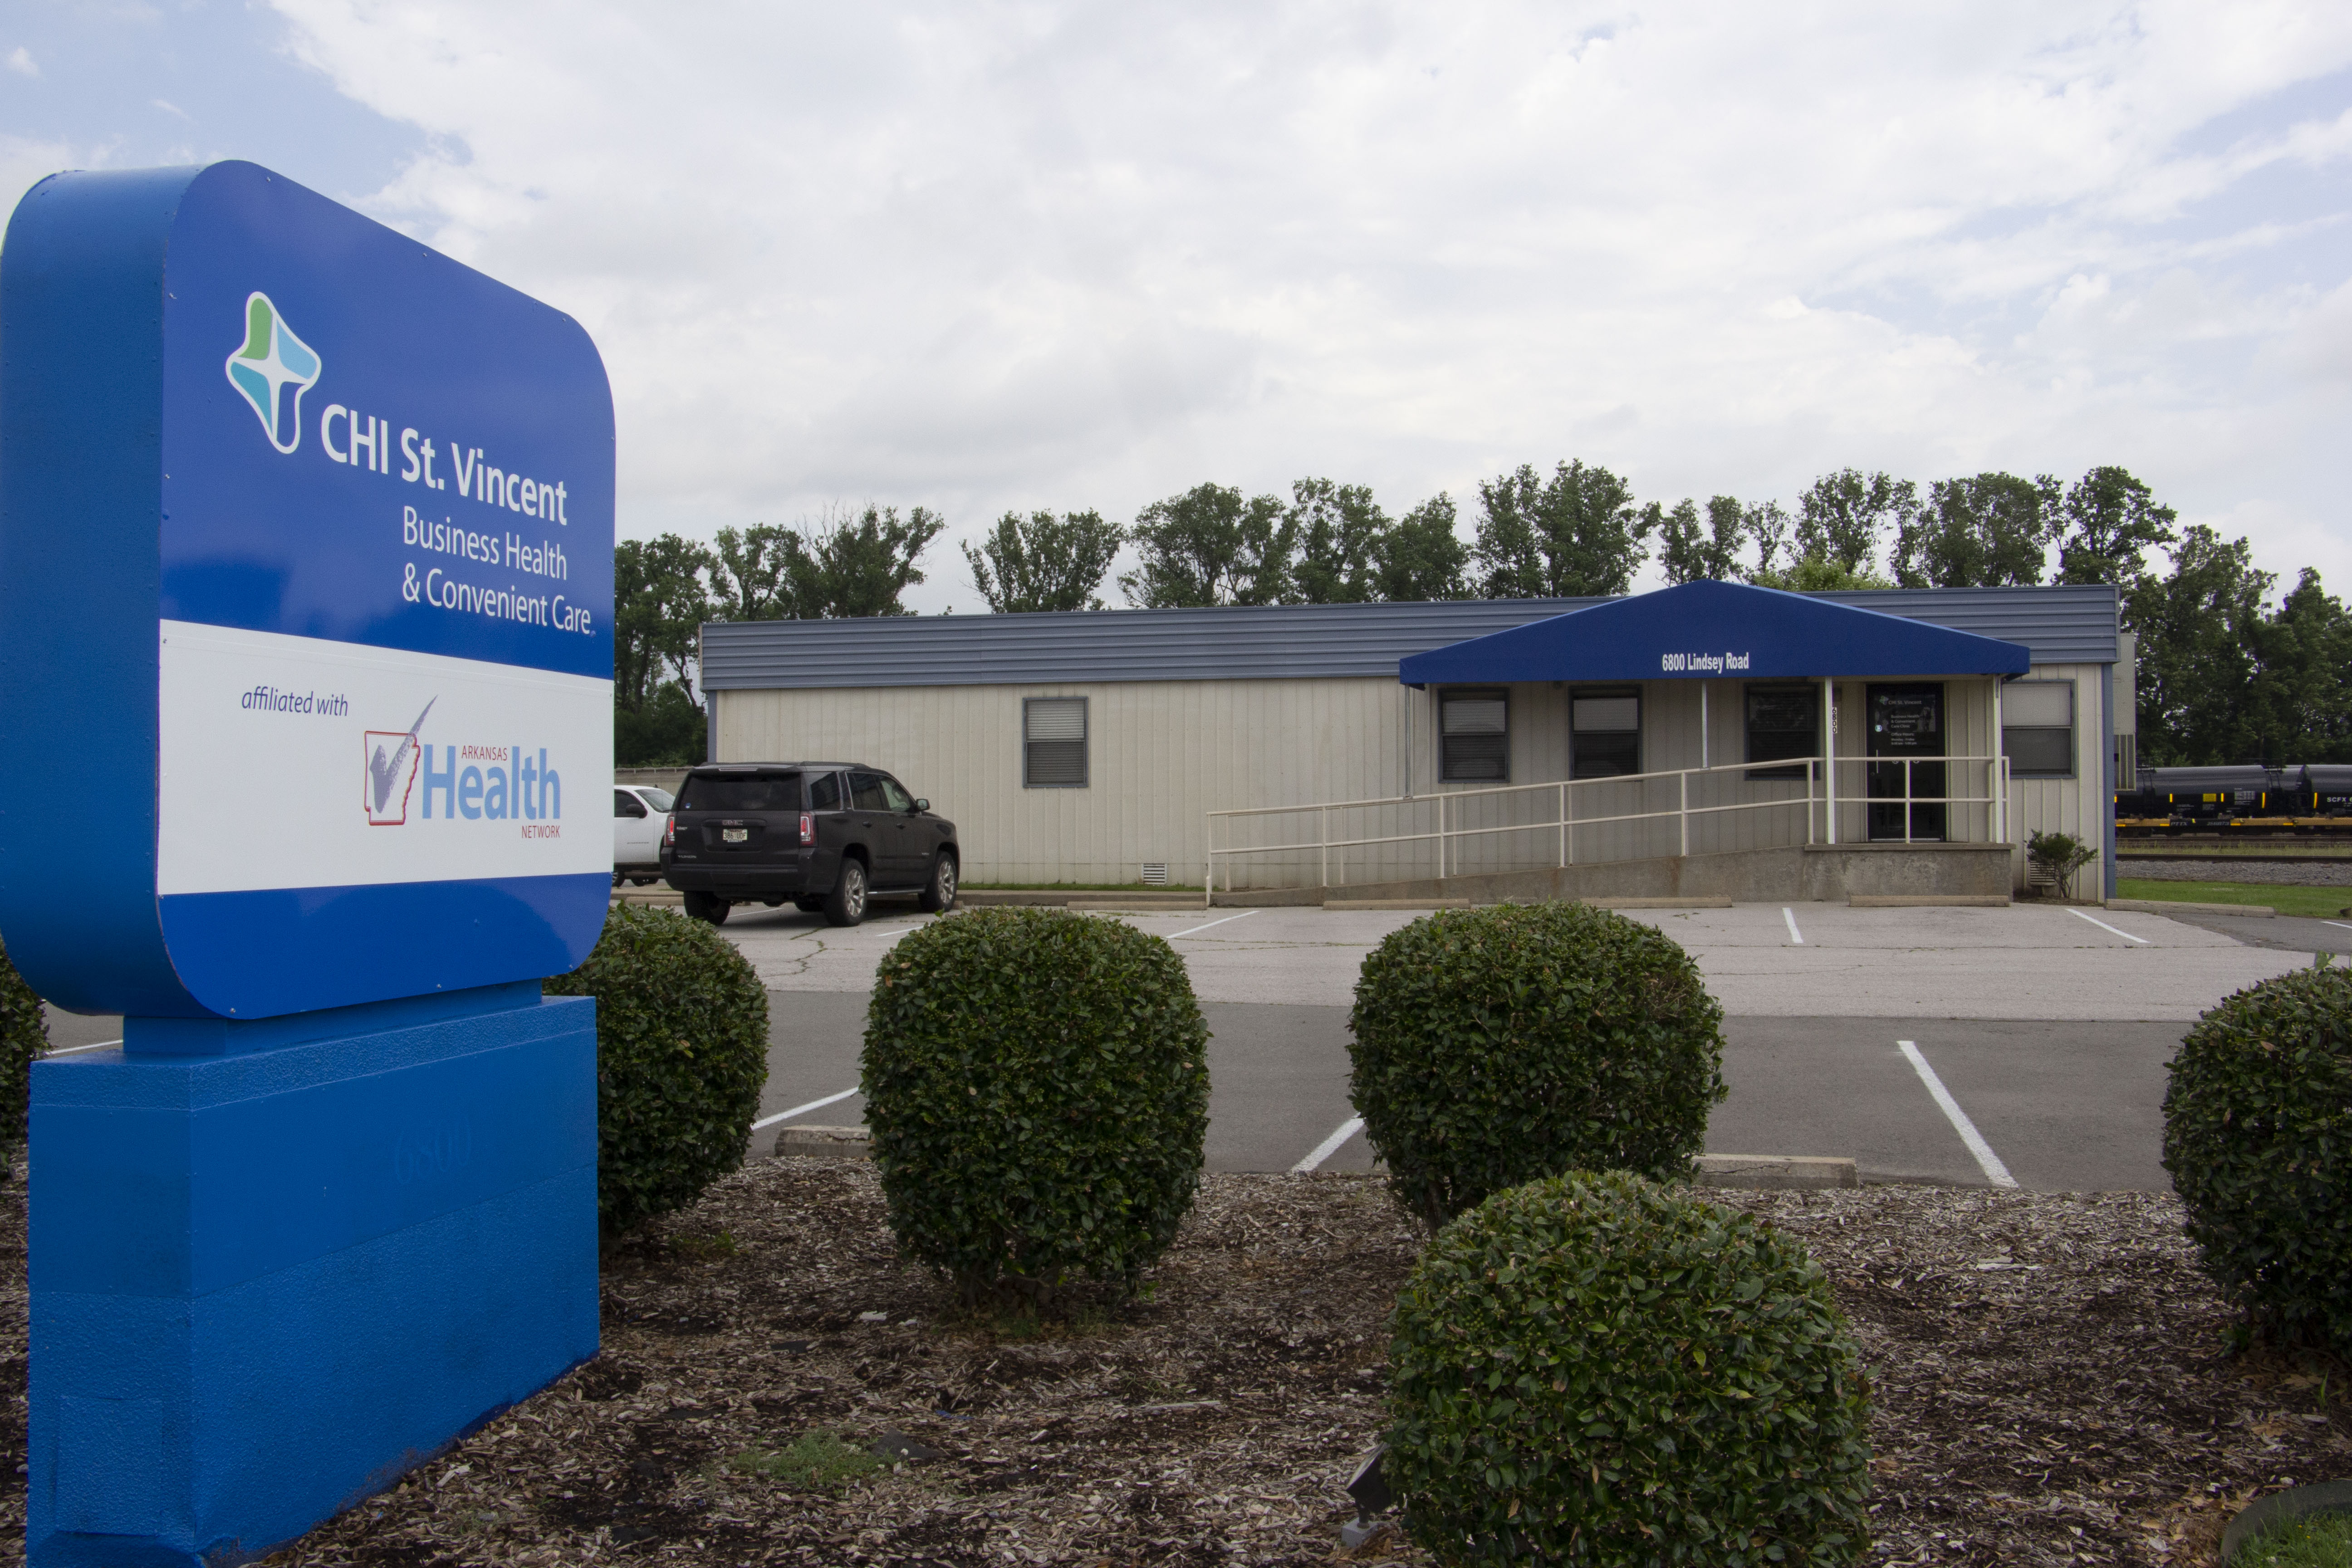 CHI St. Vincent Business Health & Convenient Care - Little Rock